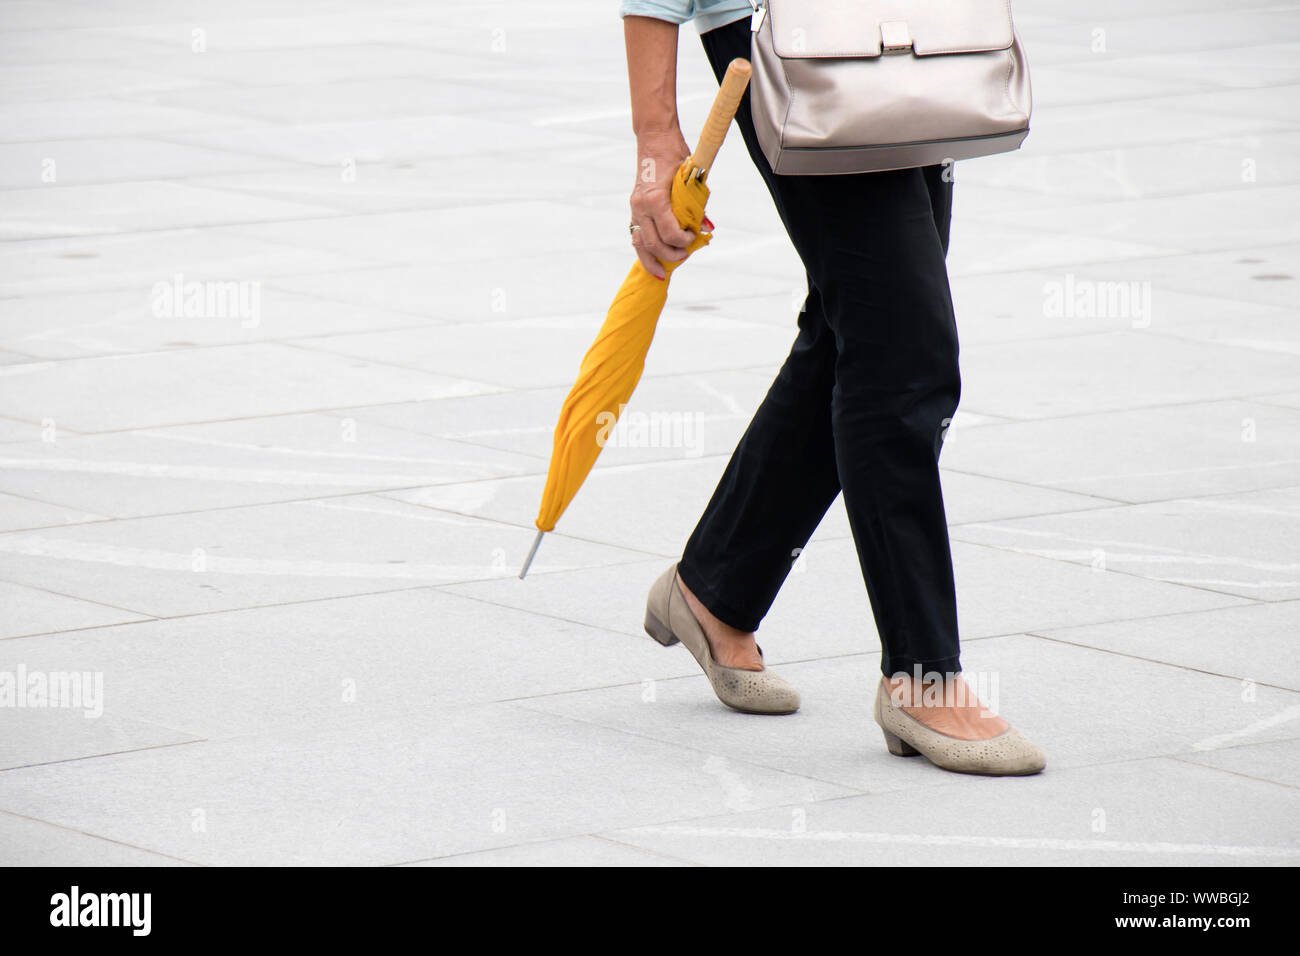 Risque de pluie : une femme marche sur city square pavement exerçant son parapluie jaune pliée , à partir de la taille vers le bas Banque D'Images